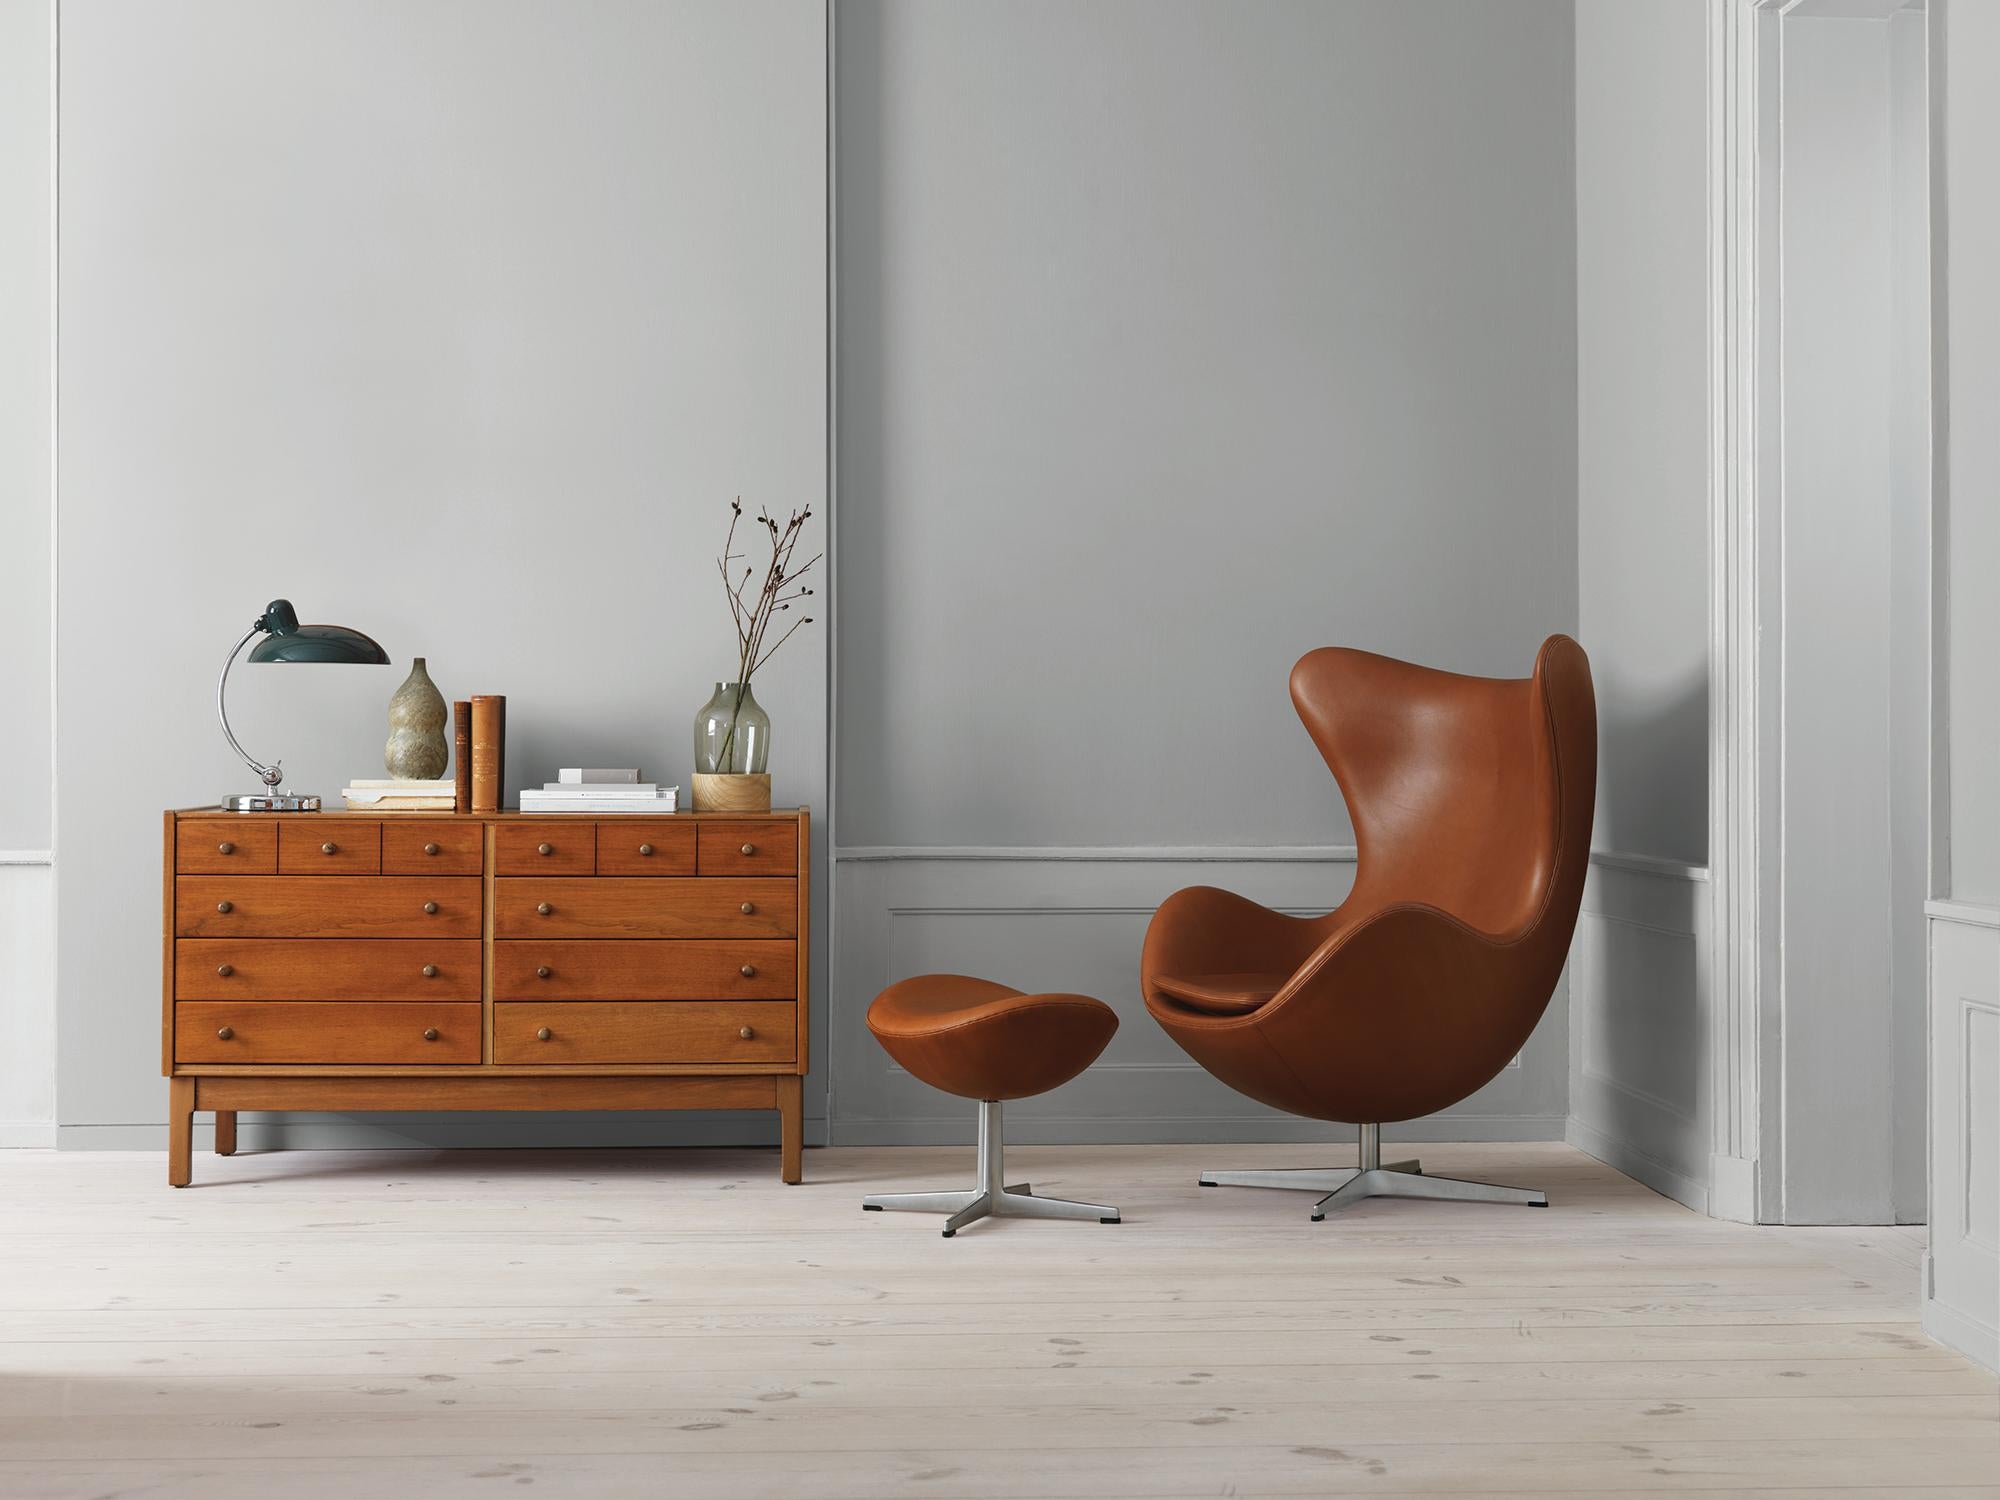 Danish Arne Jacobsen 'Egg' Chair for Fritz Hansen in Leather Upholstery (Cat. 5) For Sale